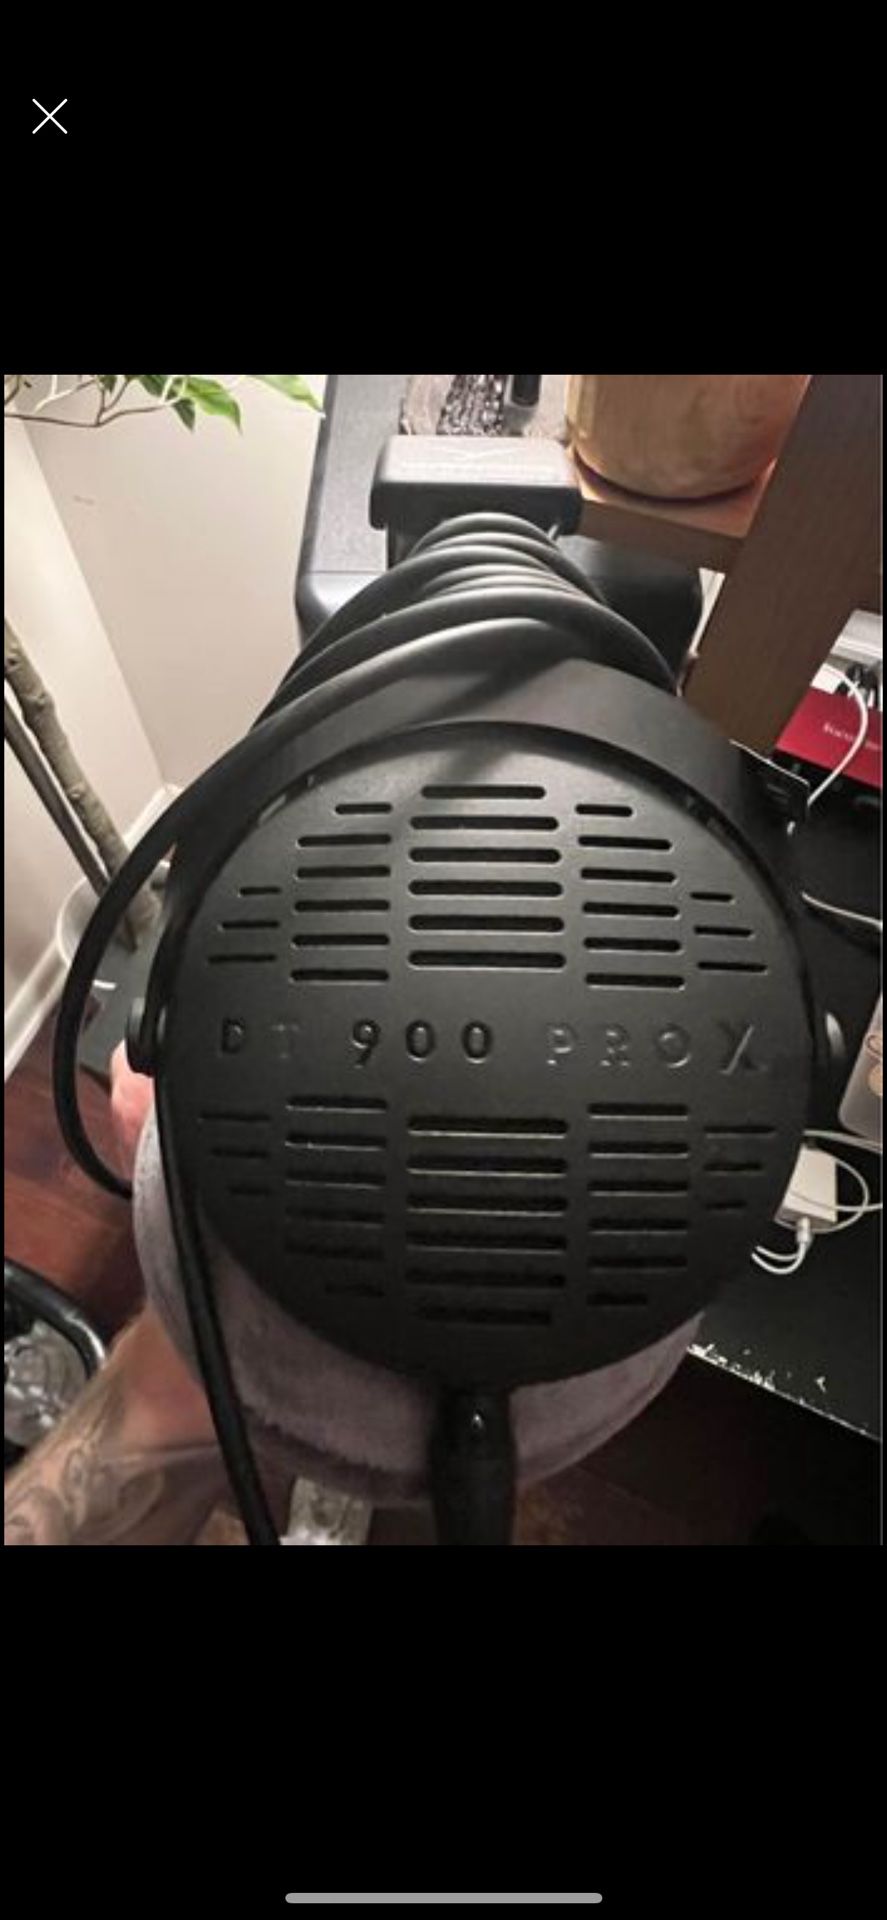 DT 900 PRO studio headphones